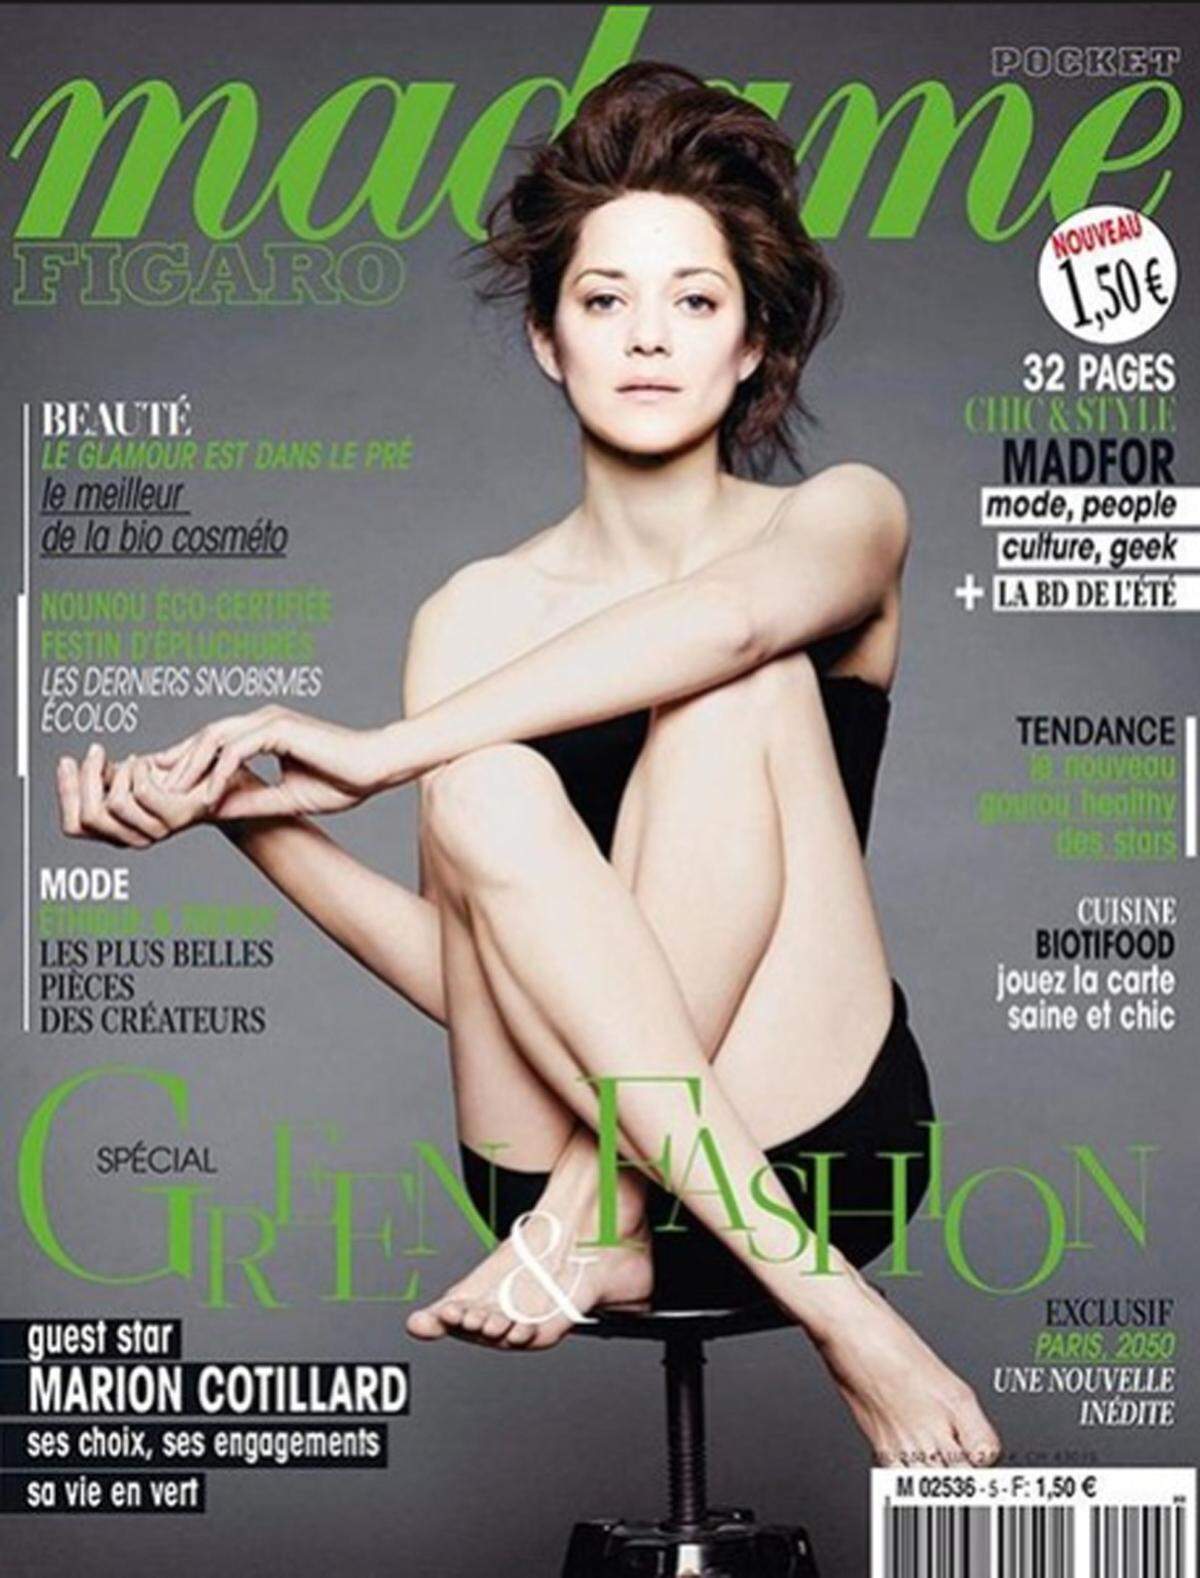 Wirklich auf Make-up und Photoshop verzichtet hat auch Schauspielerin Marion Cotillard passend zum "Green Fashion"-Modethema des Magazins Madame Figaro.